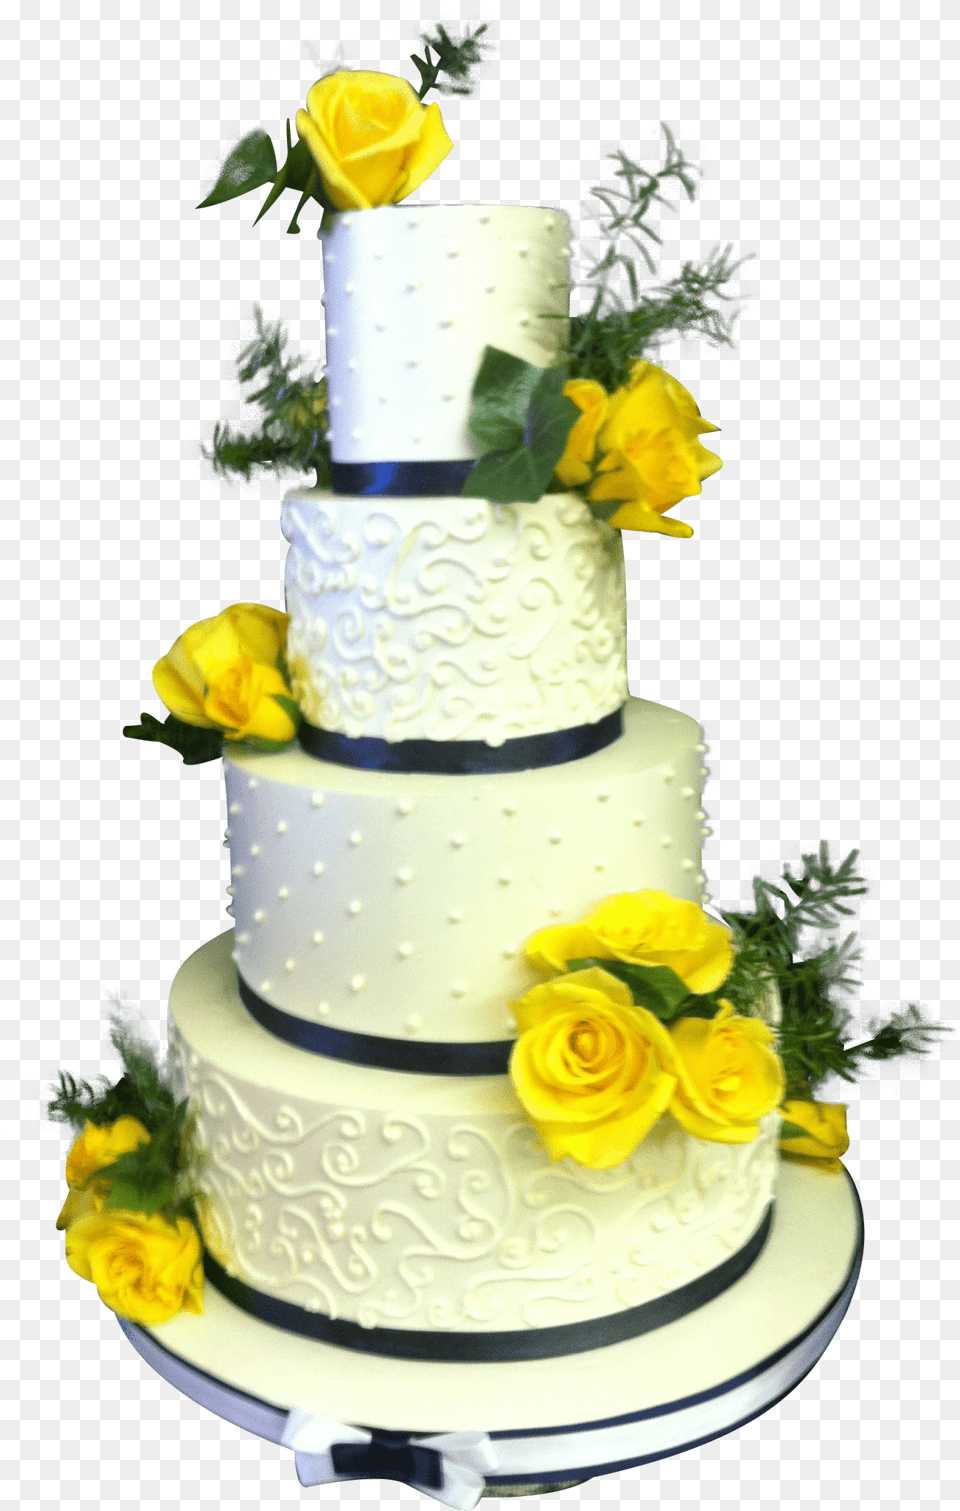 Yellow Ribbon Wedding Cake, Food, Cream, Dessert, Flower Free Png Download